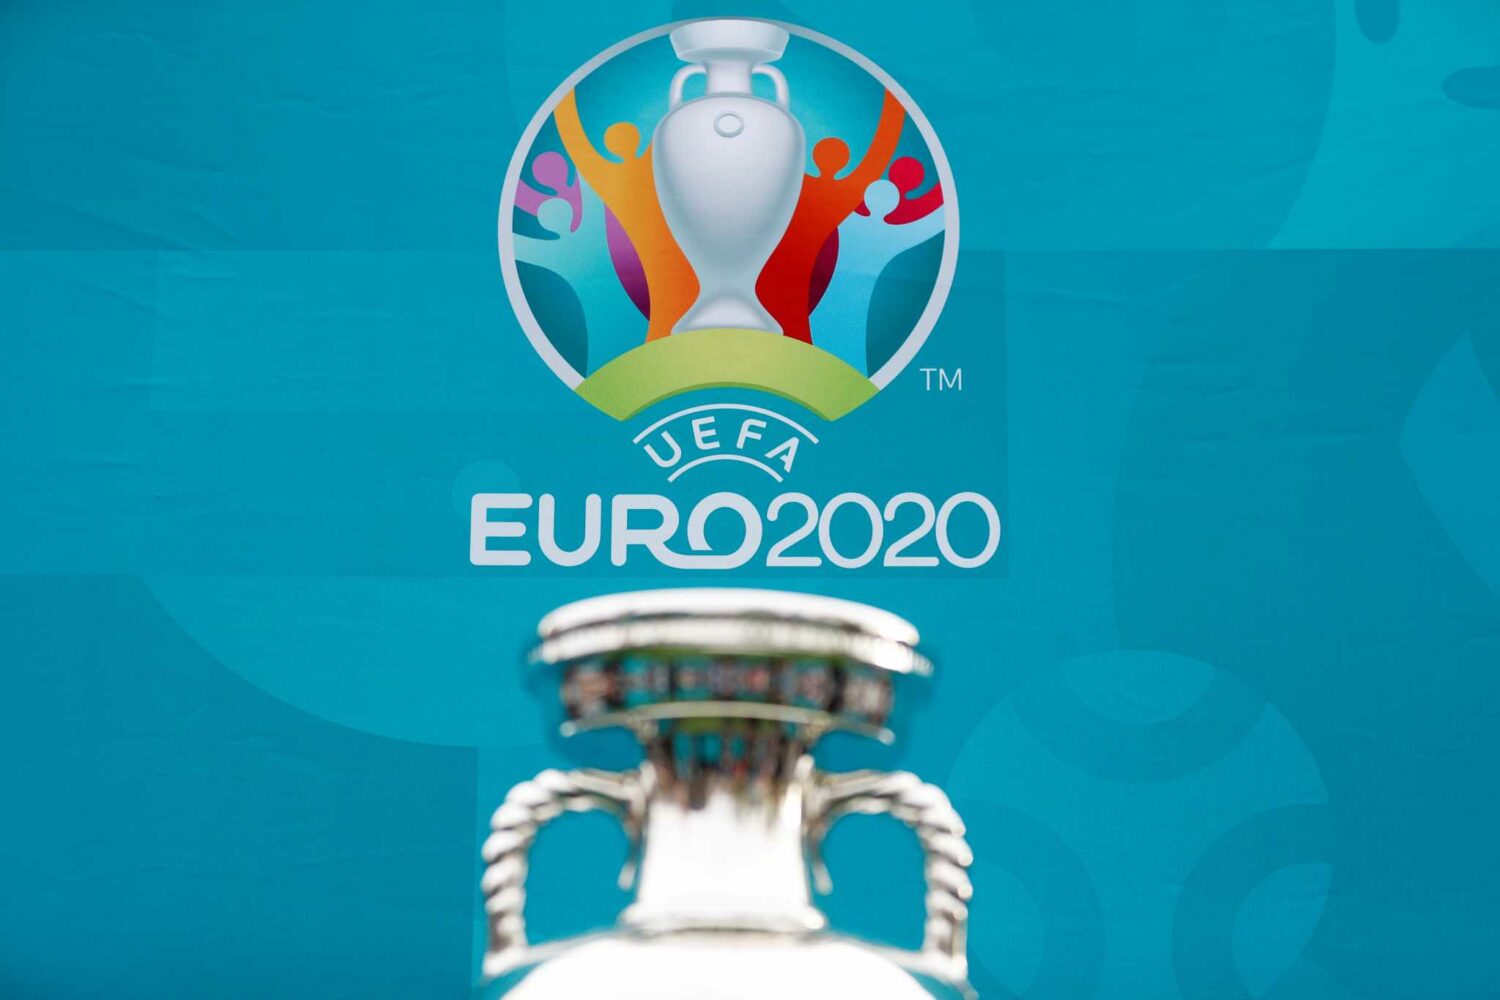 Euro 2020: 6,1 εκατ. λίτρα μπύρας θα καταναλώσουν οι Βρετανοί στον τελικό